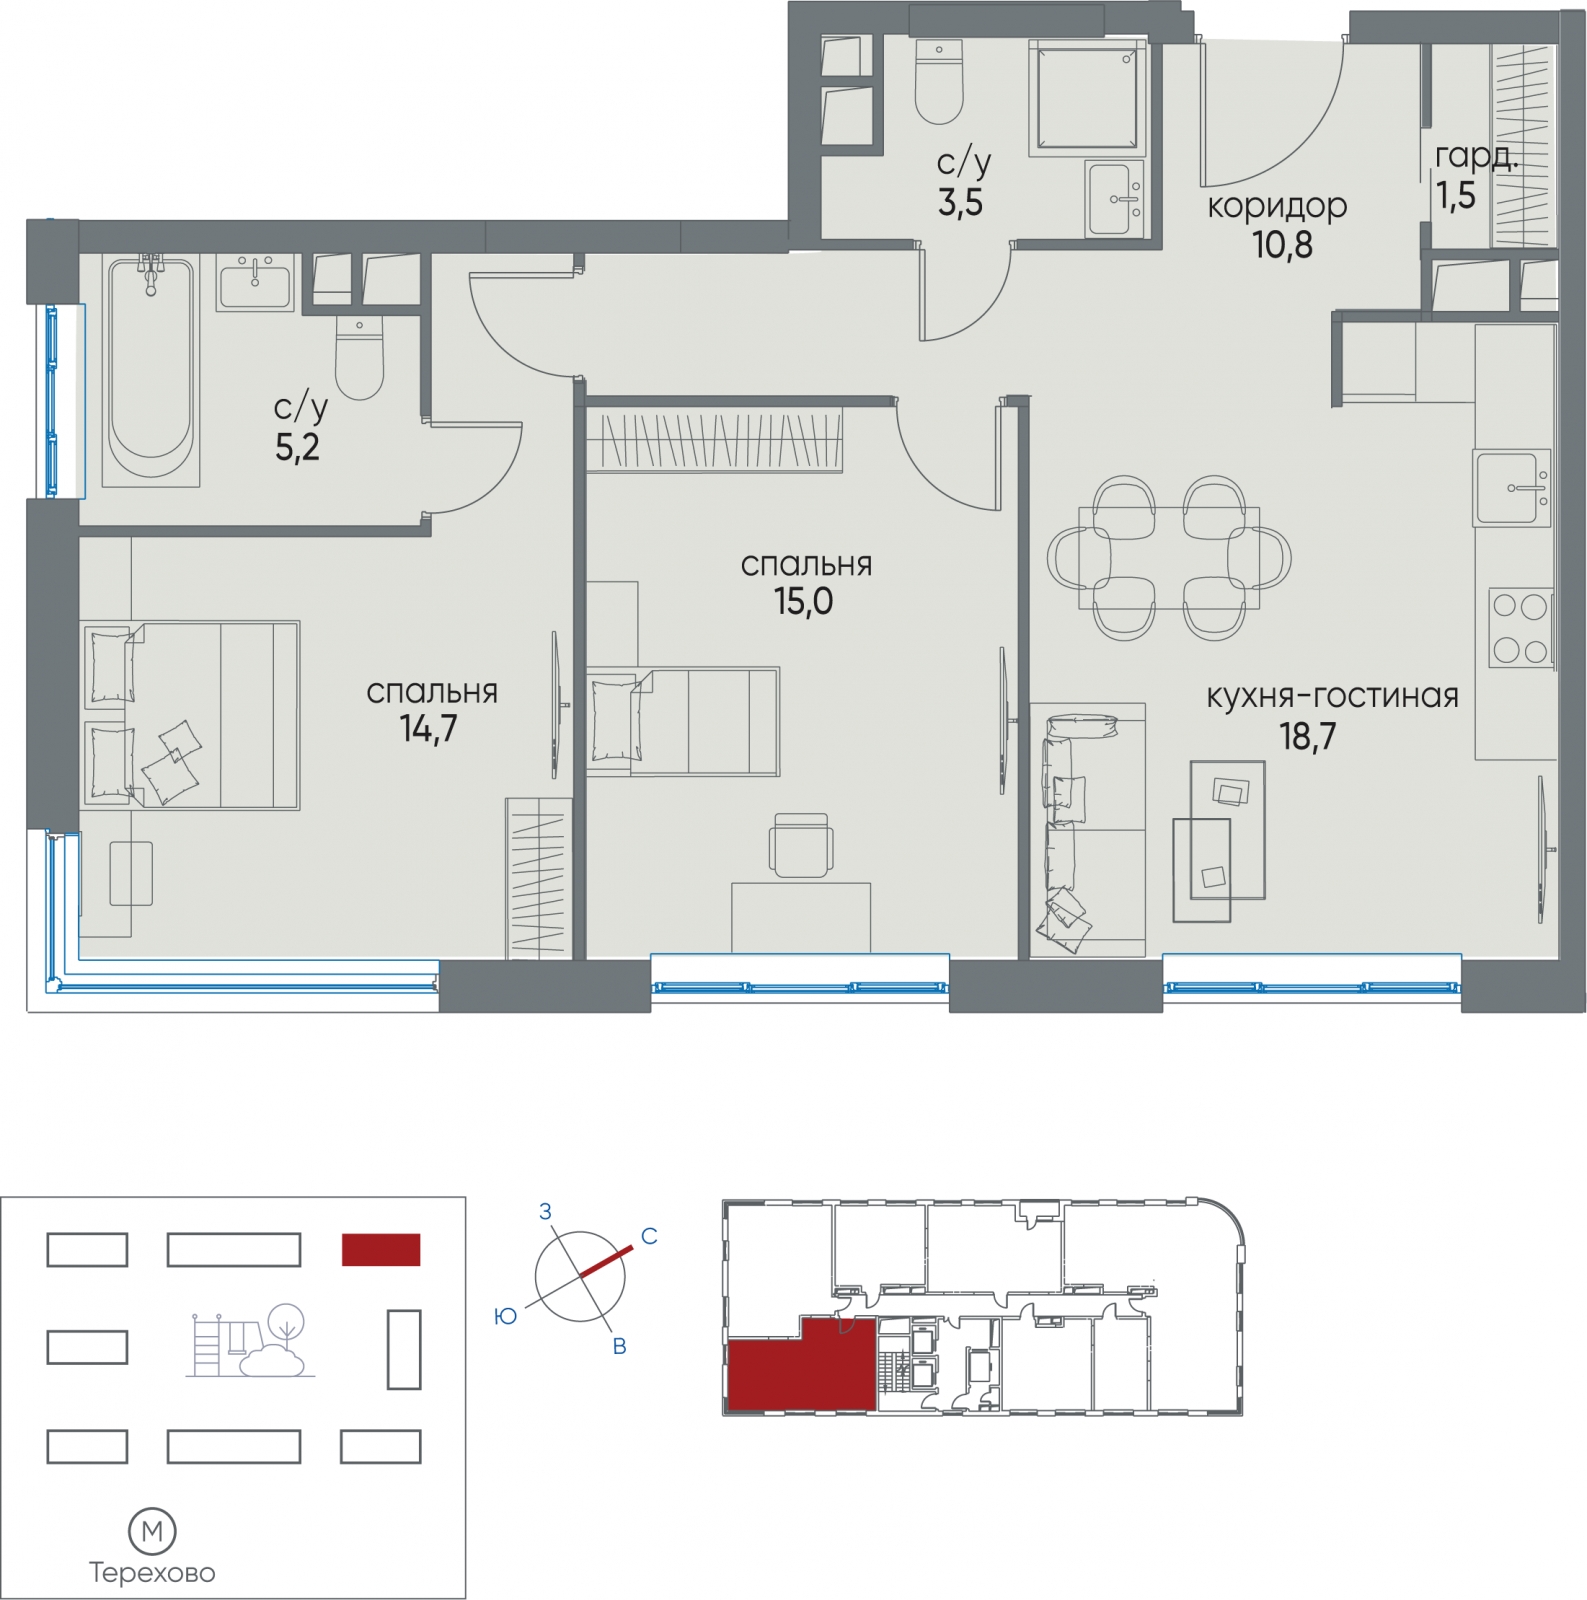 1-комнатная квартира с отделкой в ЖК WINGS апартаменты на Крыленко на 2 этаже в 1 секции. Дом сдан.